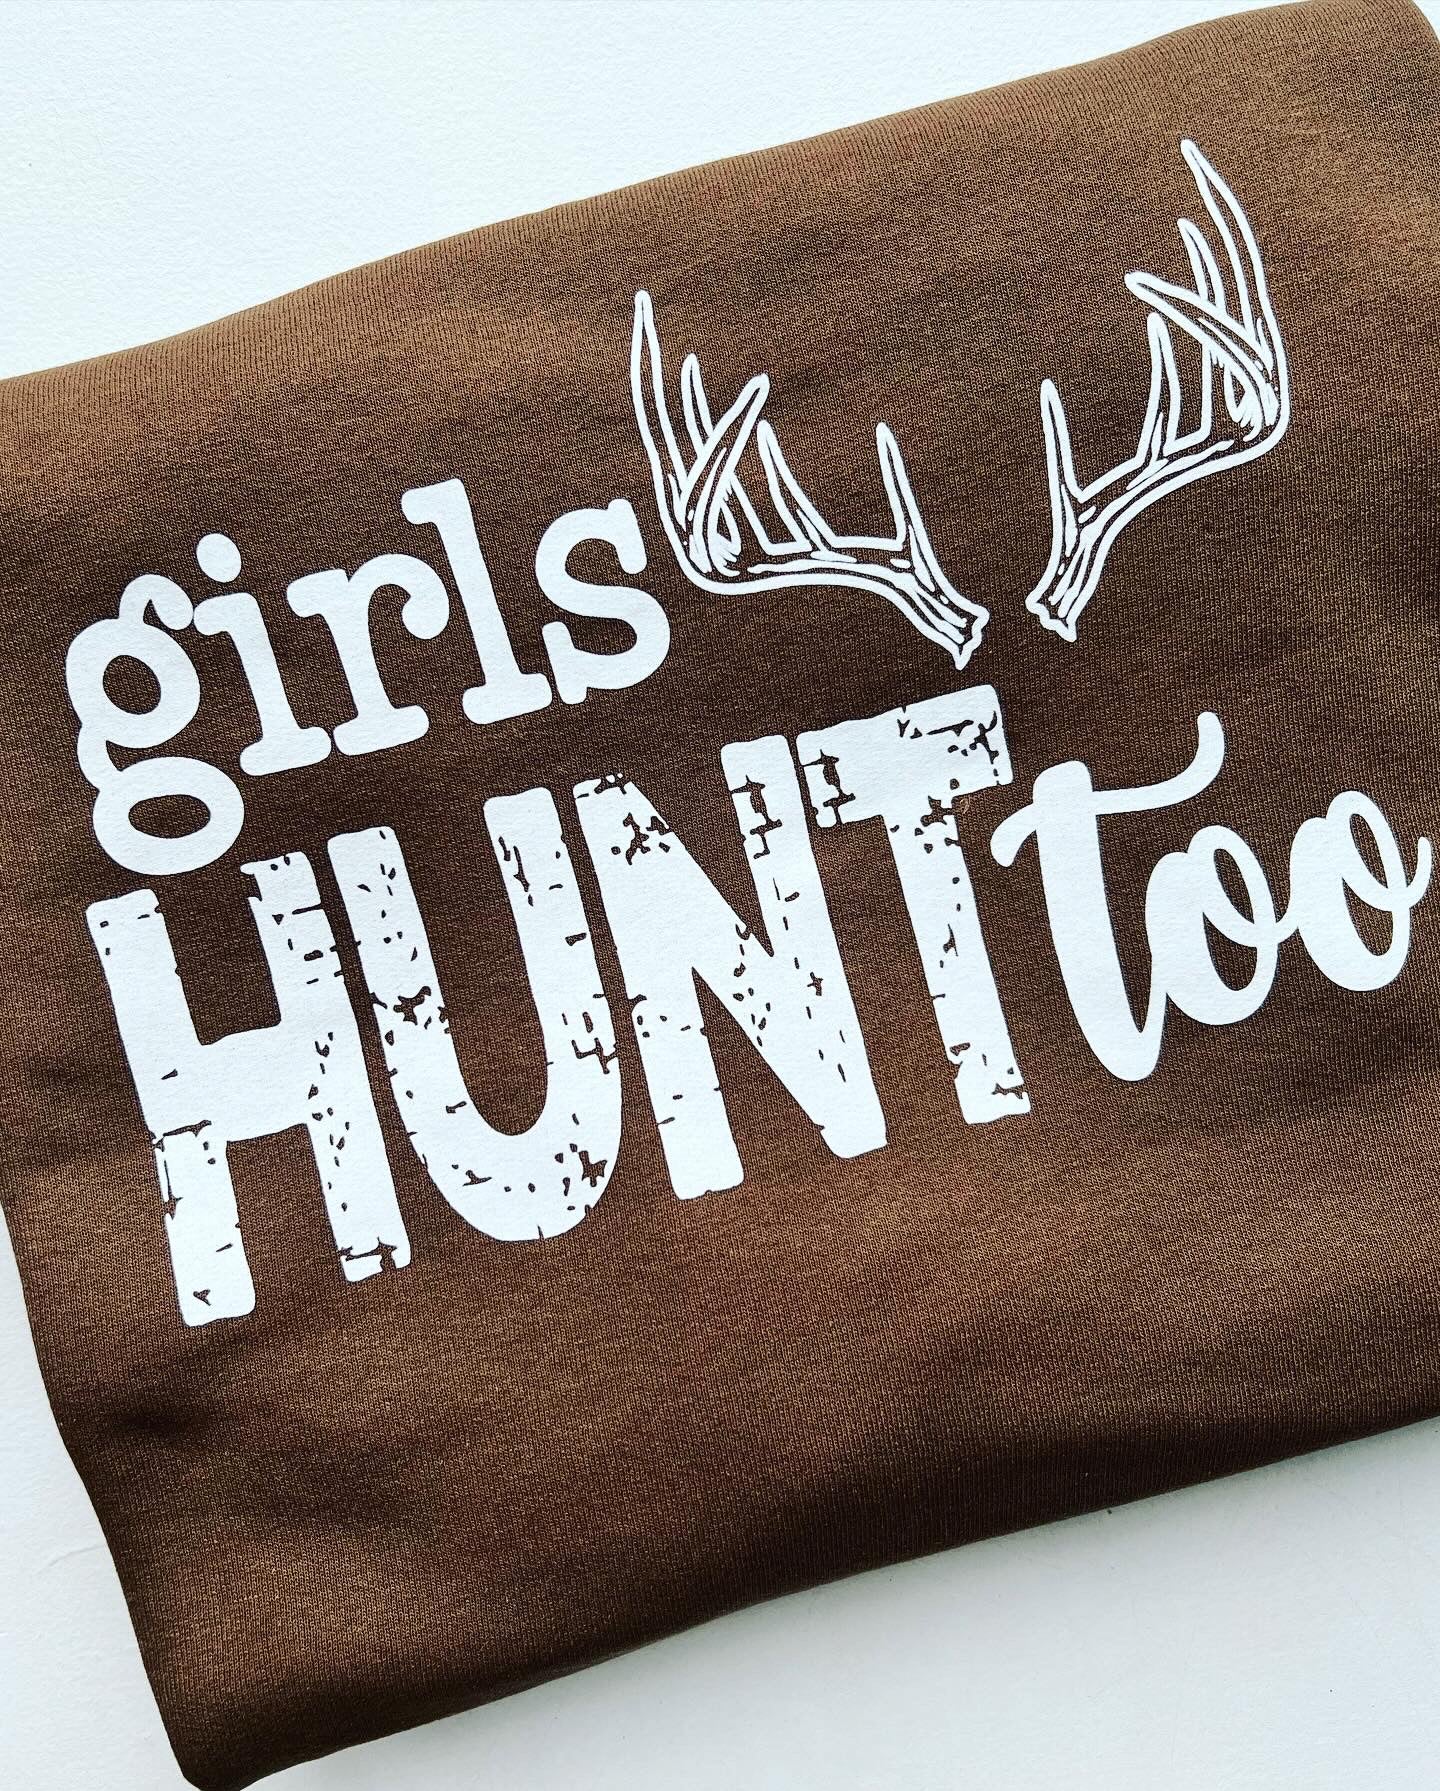 Girls Hunt Too crew neck